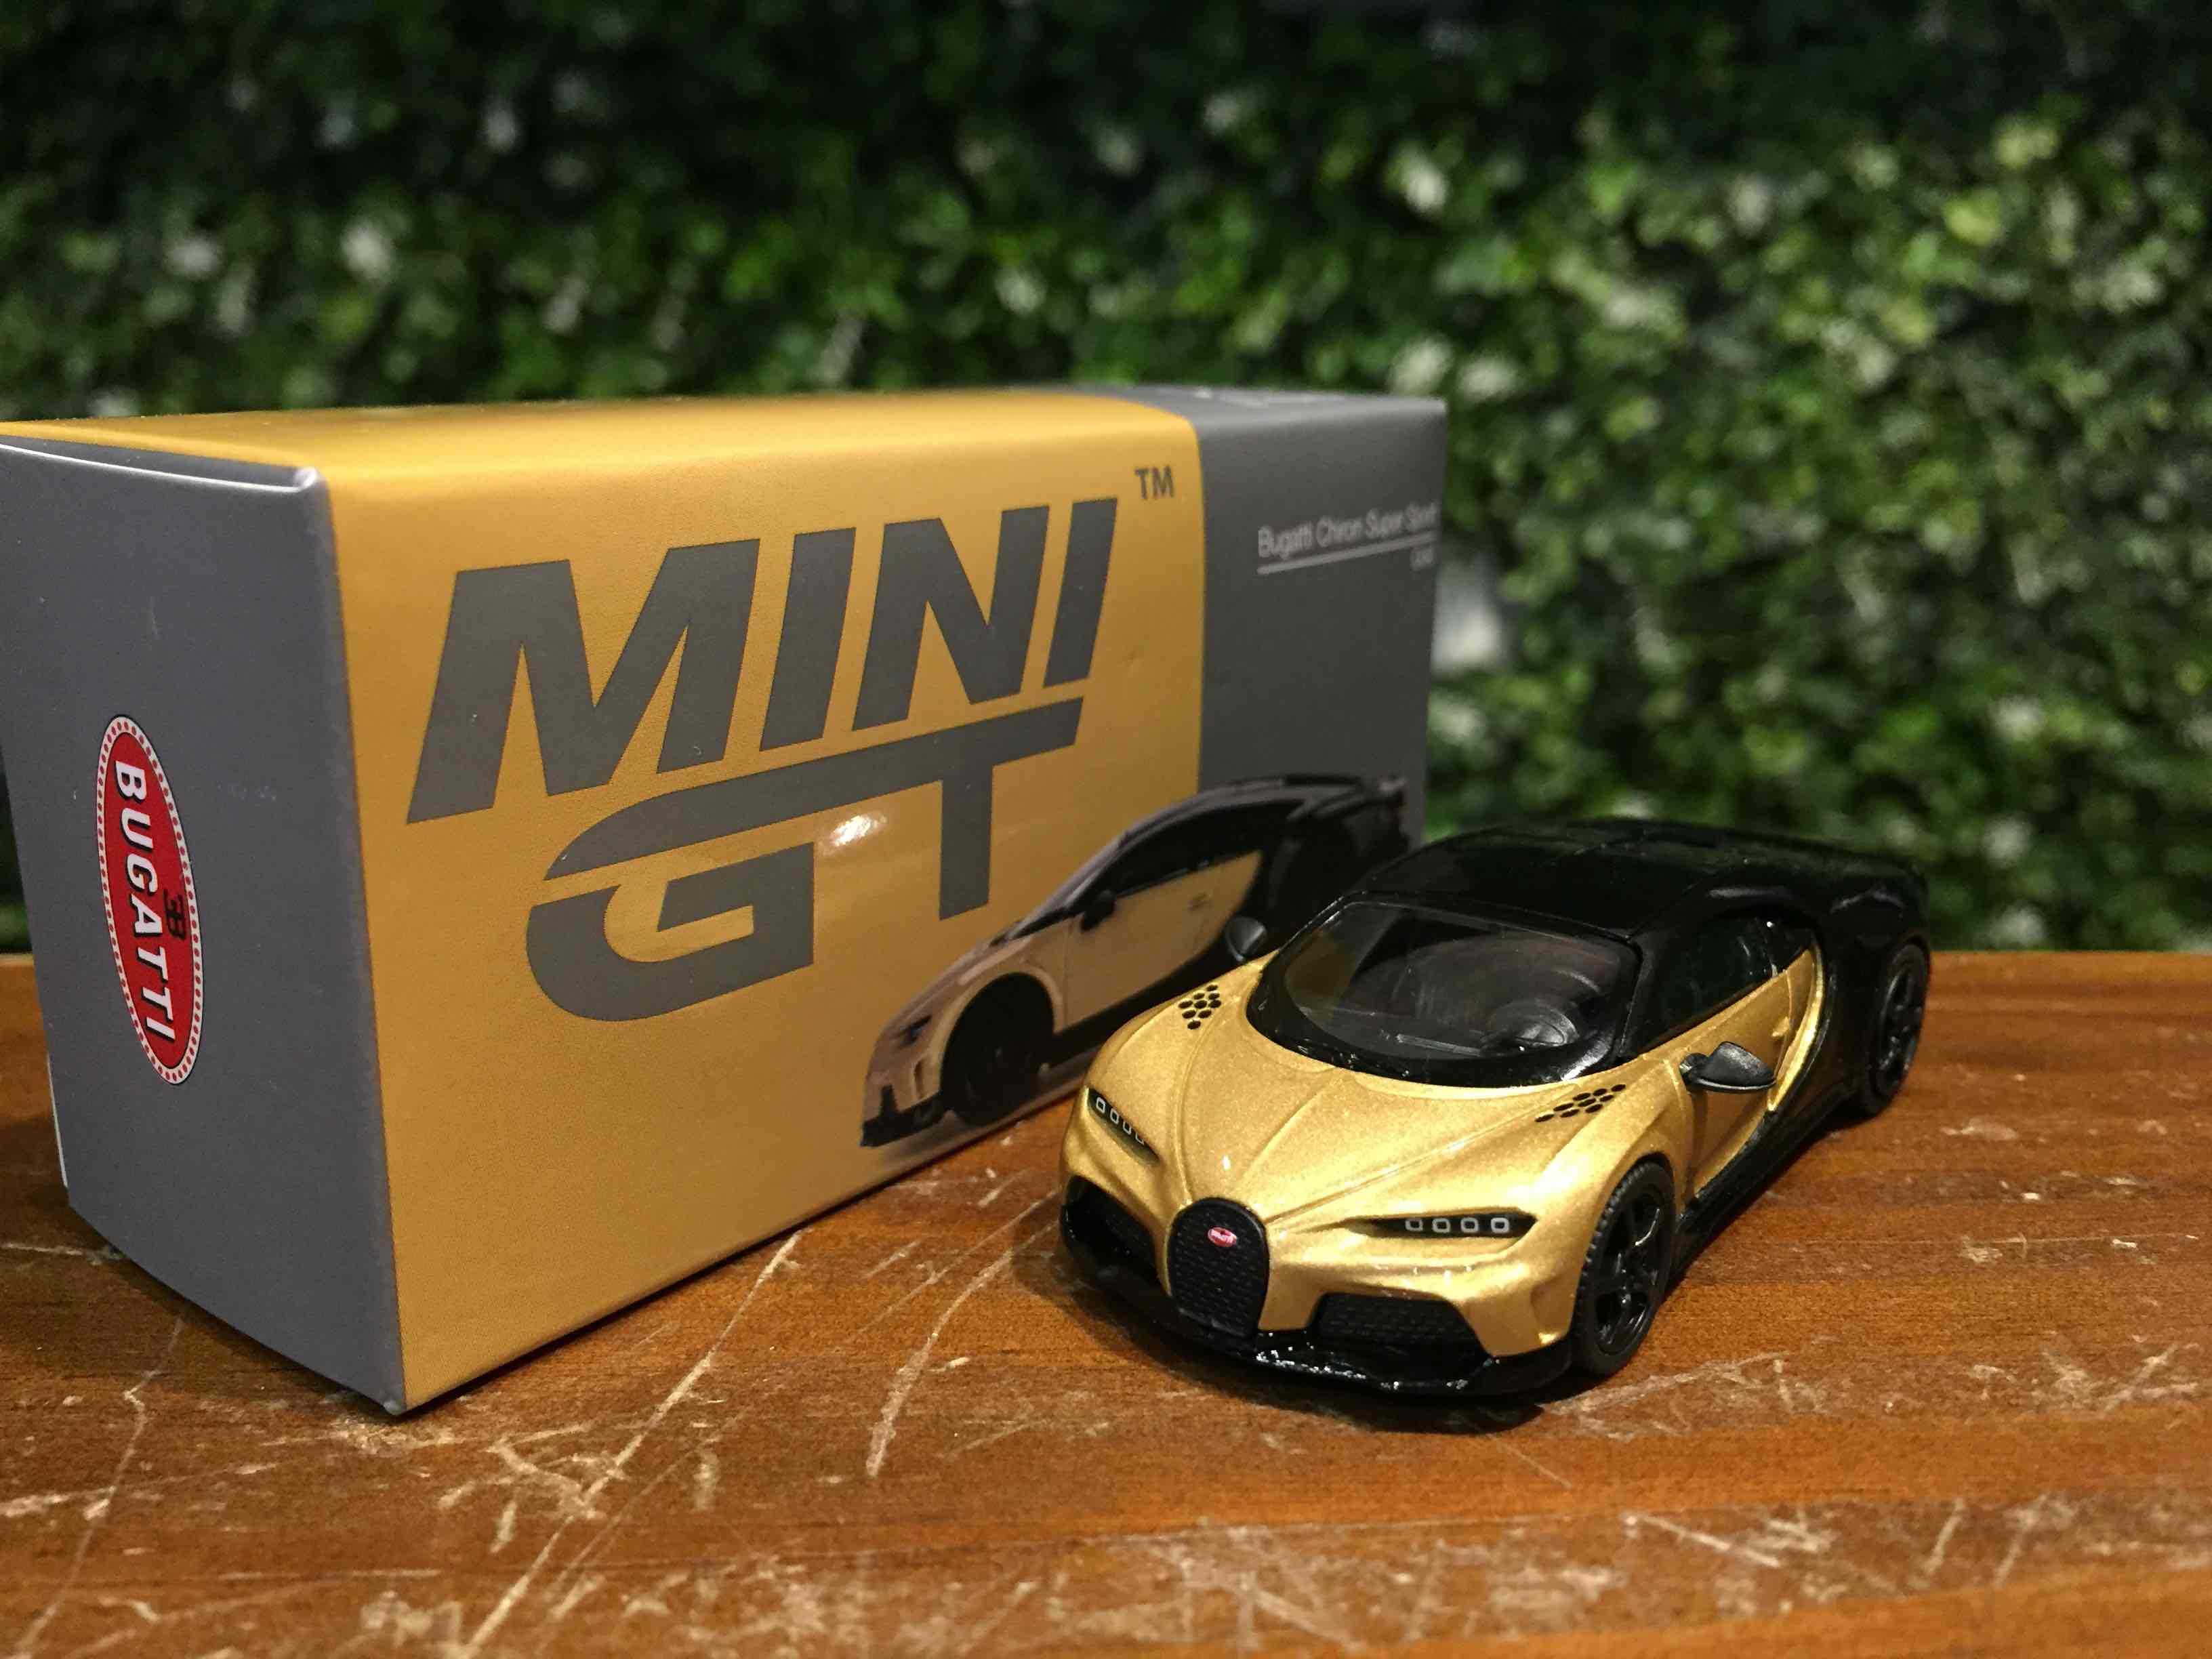 1/64 MiniGT Bugatti Chiron Super Sport Gold MGT00513L【MGM】